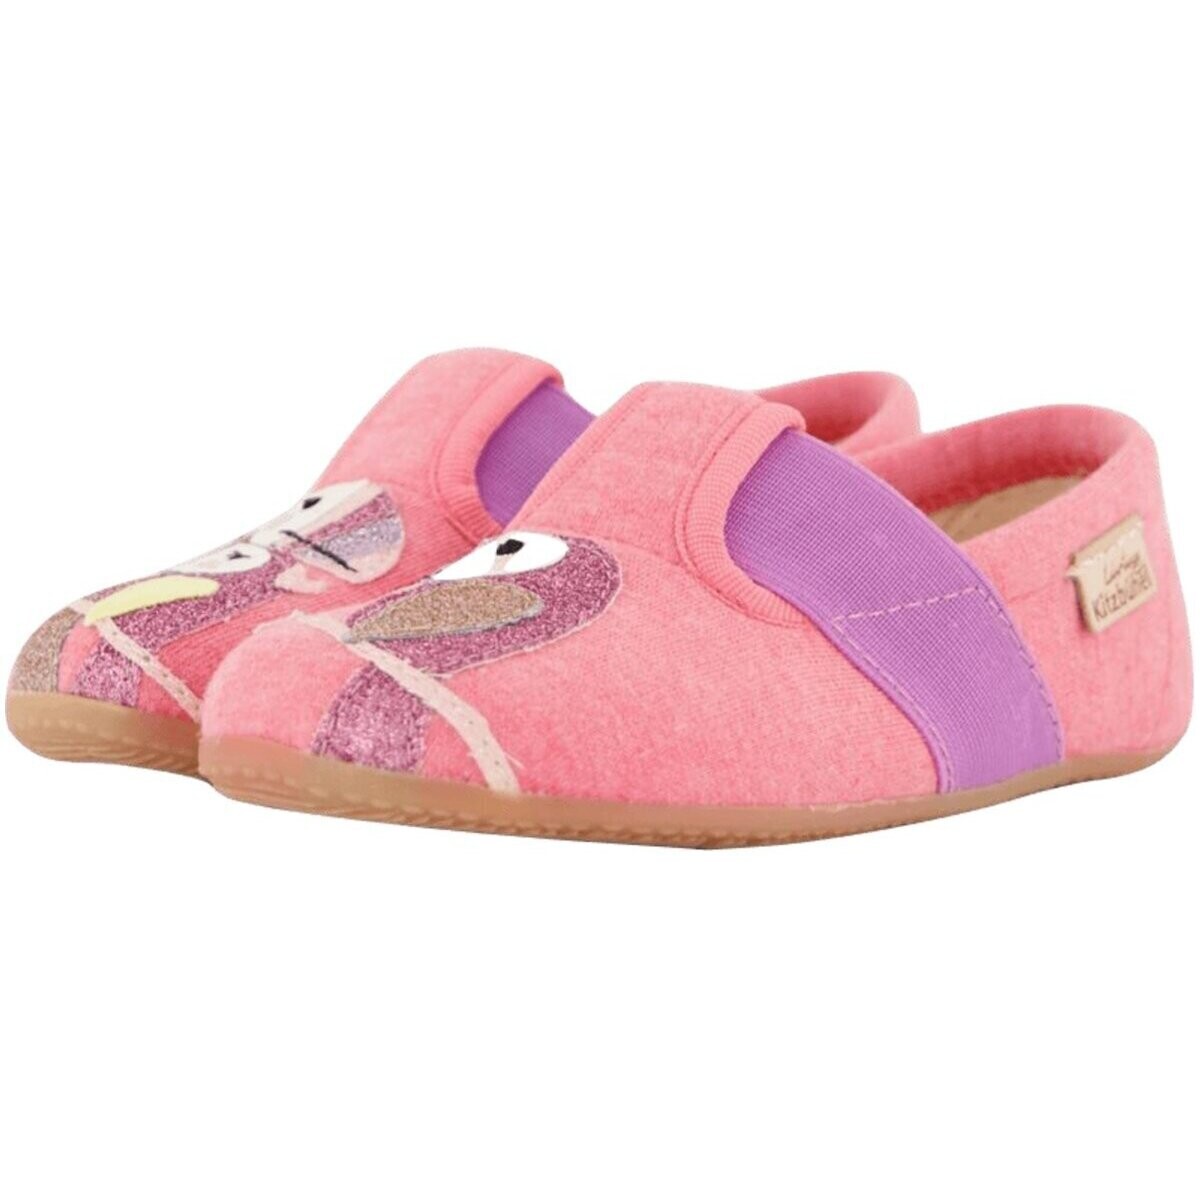 Schuhe Mädchen Babyschuhe Kitzbuehel Maedchen 4319-348 Other